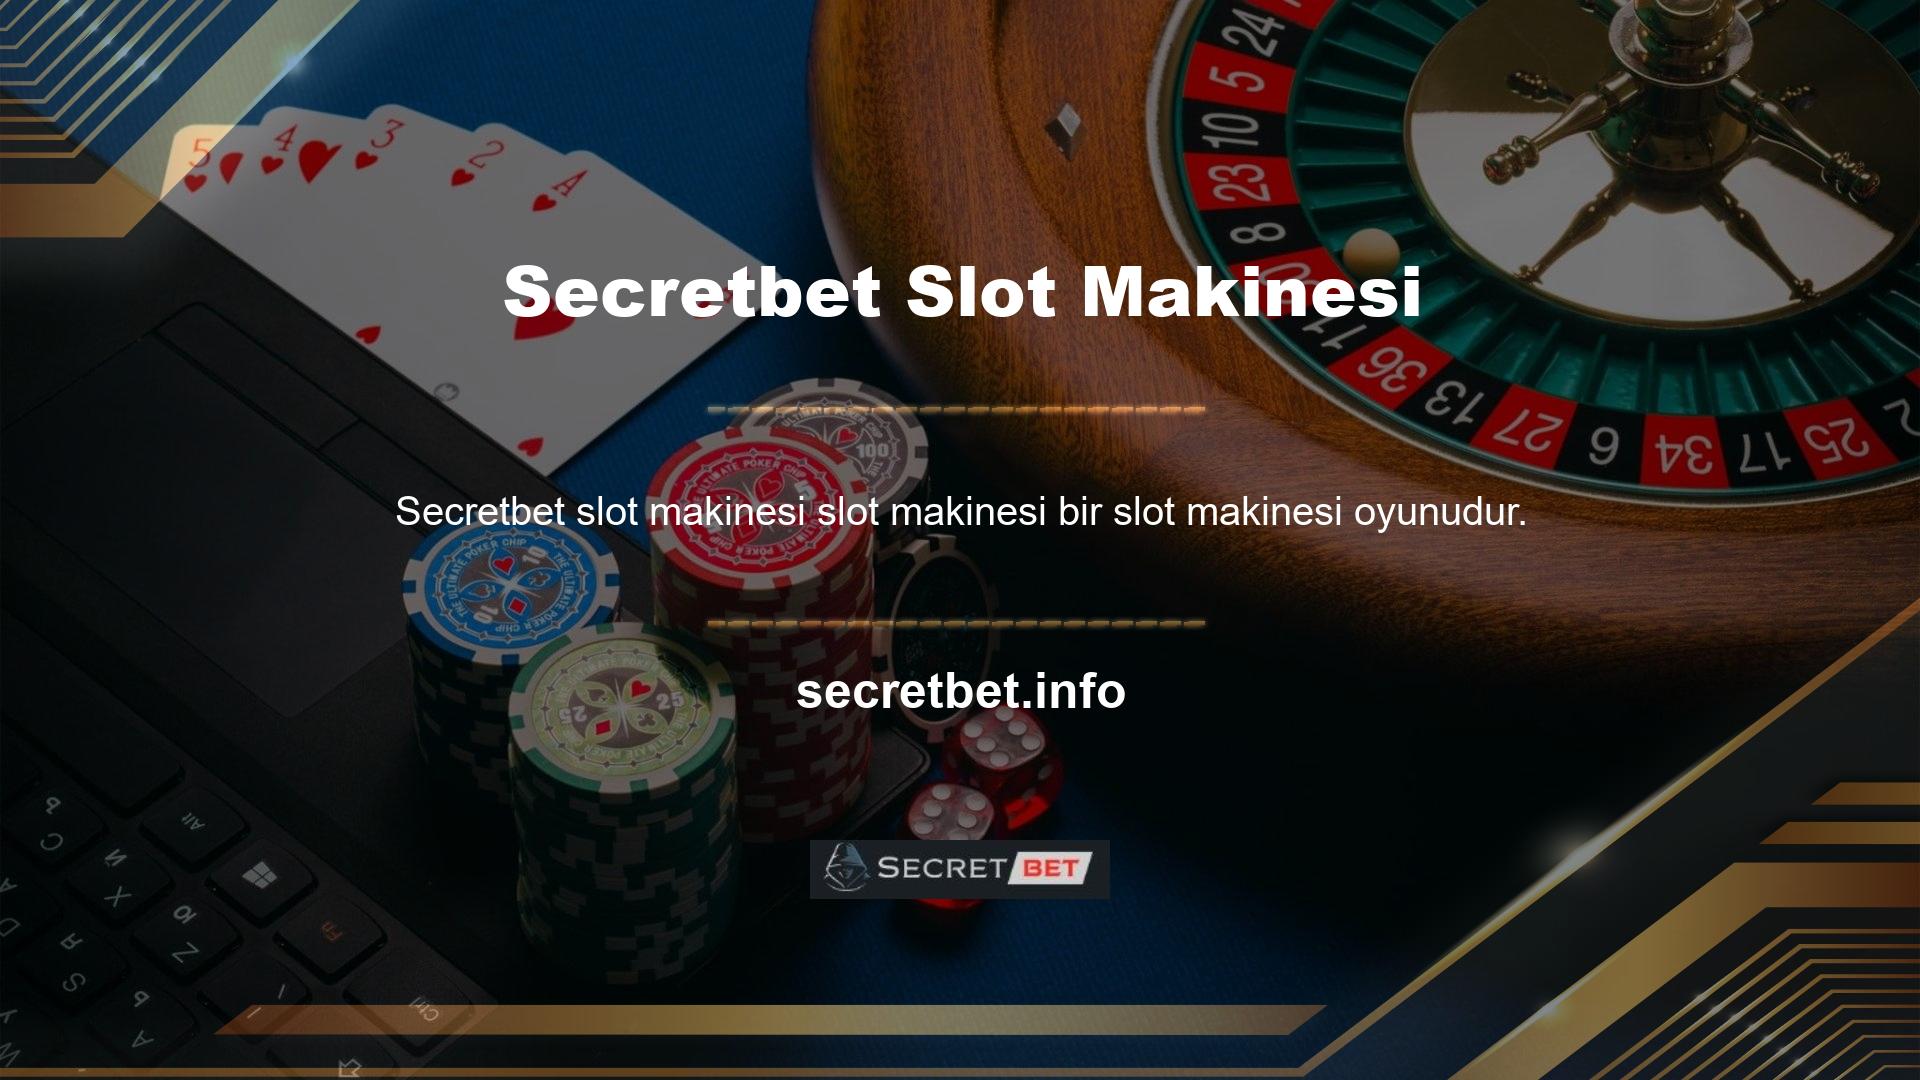 Oyunlar söz konusu olduğunda sitede slot makinesi oyunları kullanıcılara sunulmaktadır